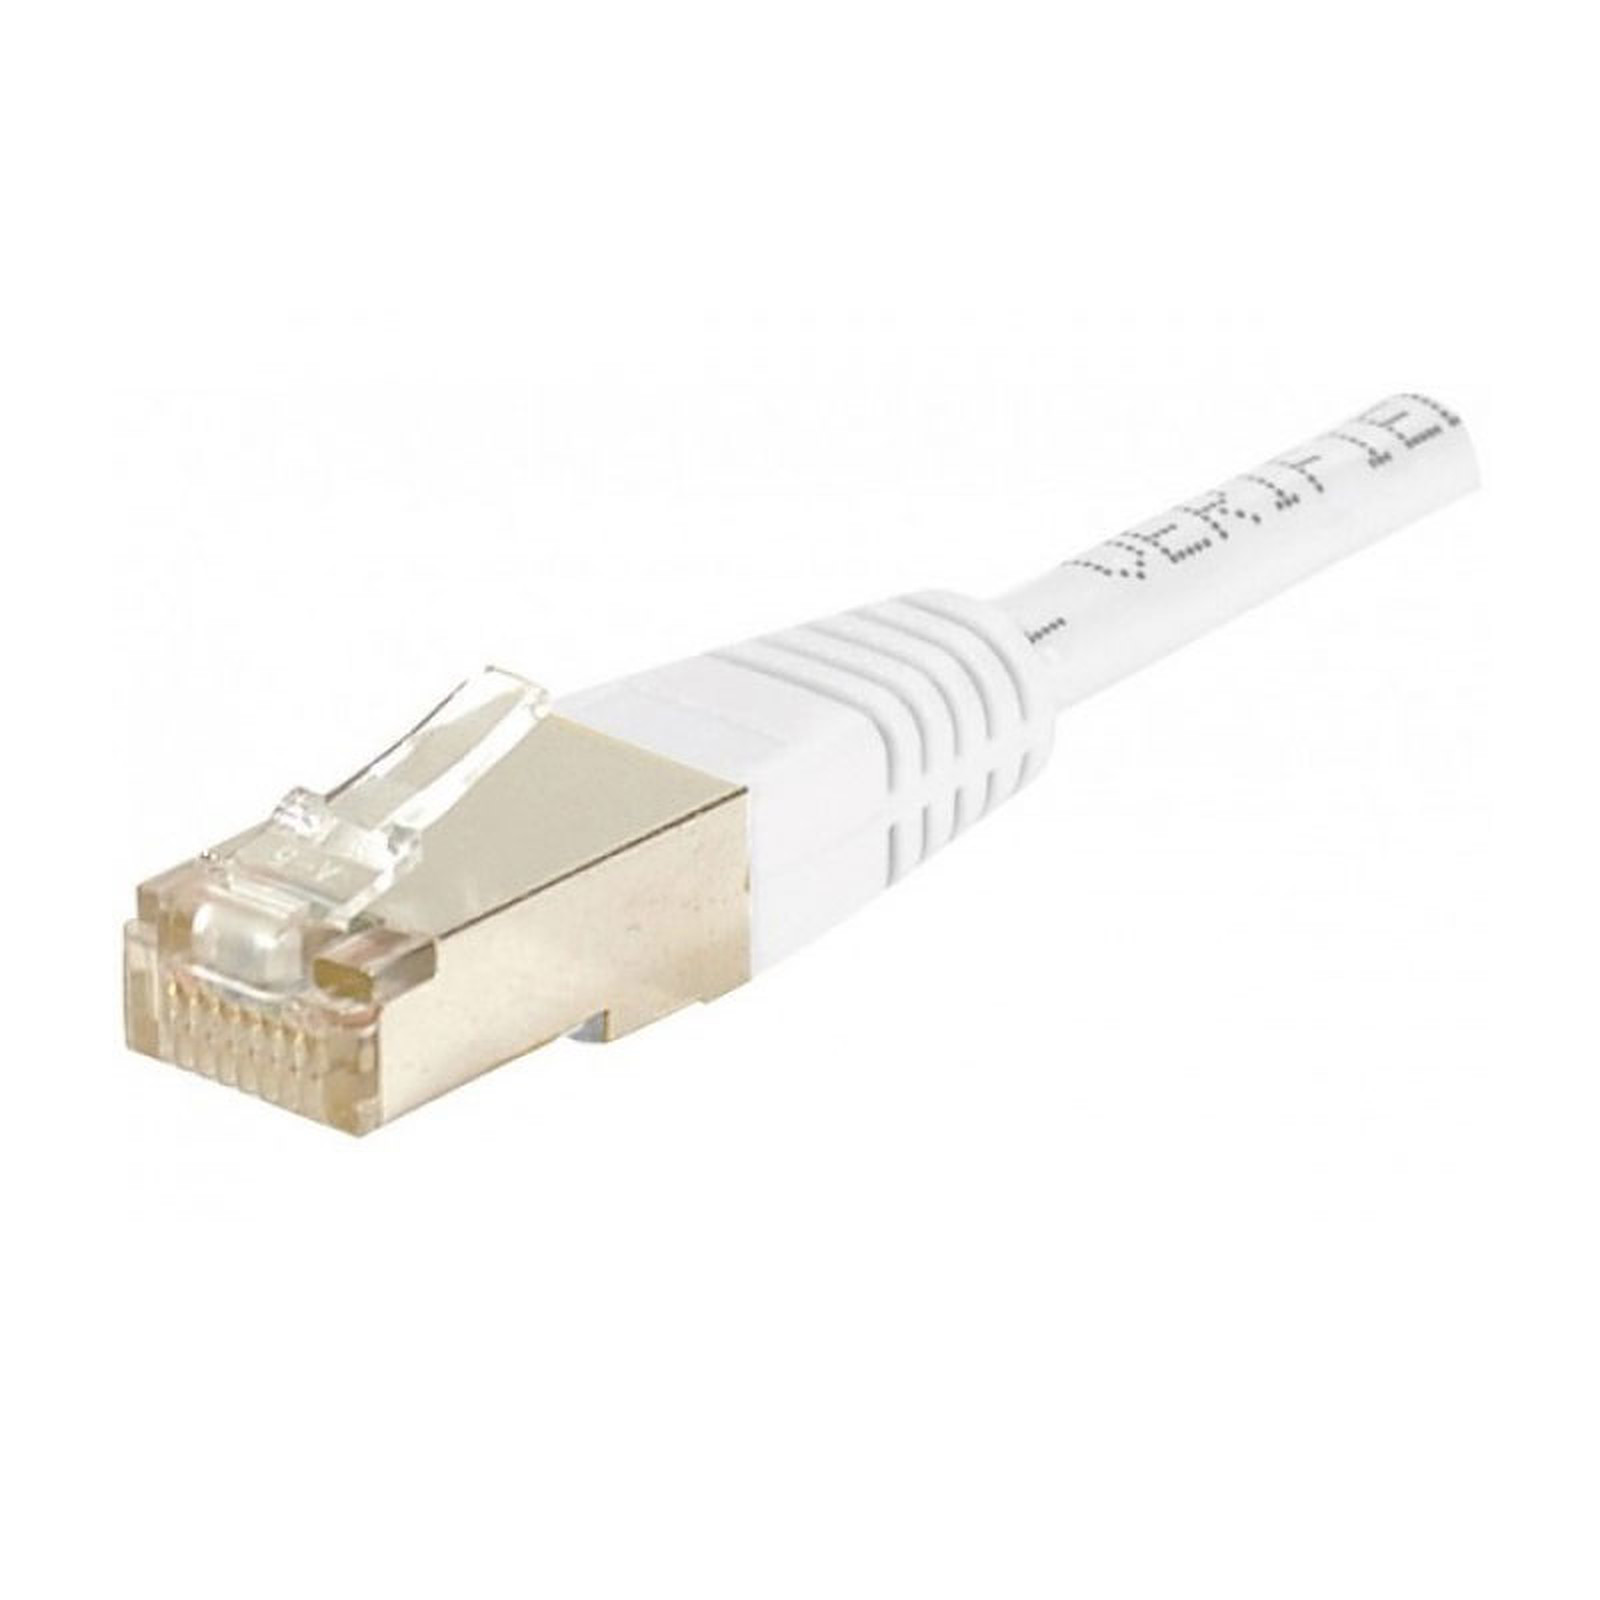 Cable RJ45 categorie 6 F/UTP 0.15 m (Blanc) - Cable RJ45 Generique